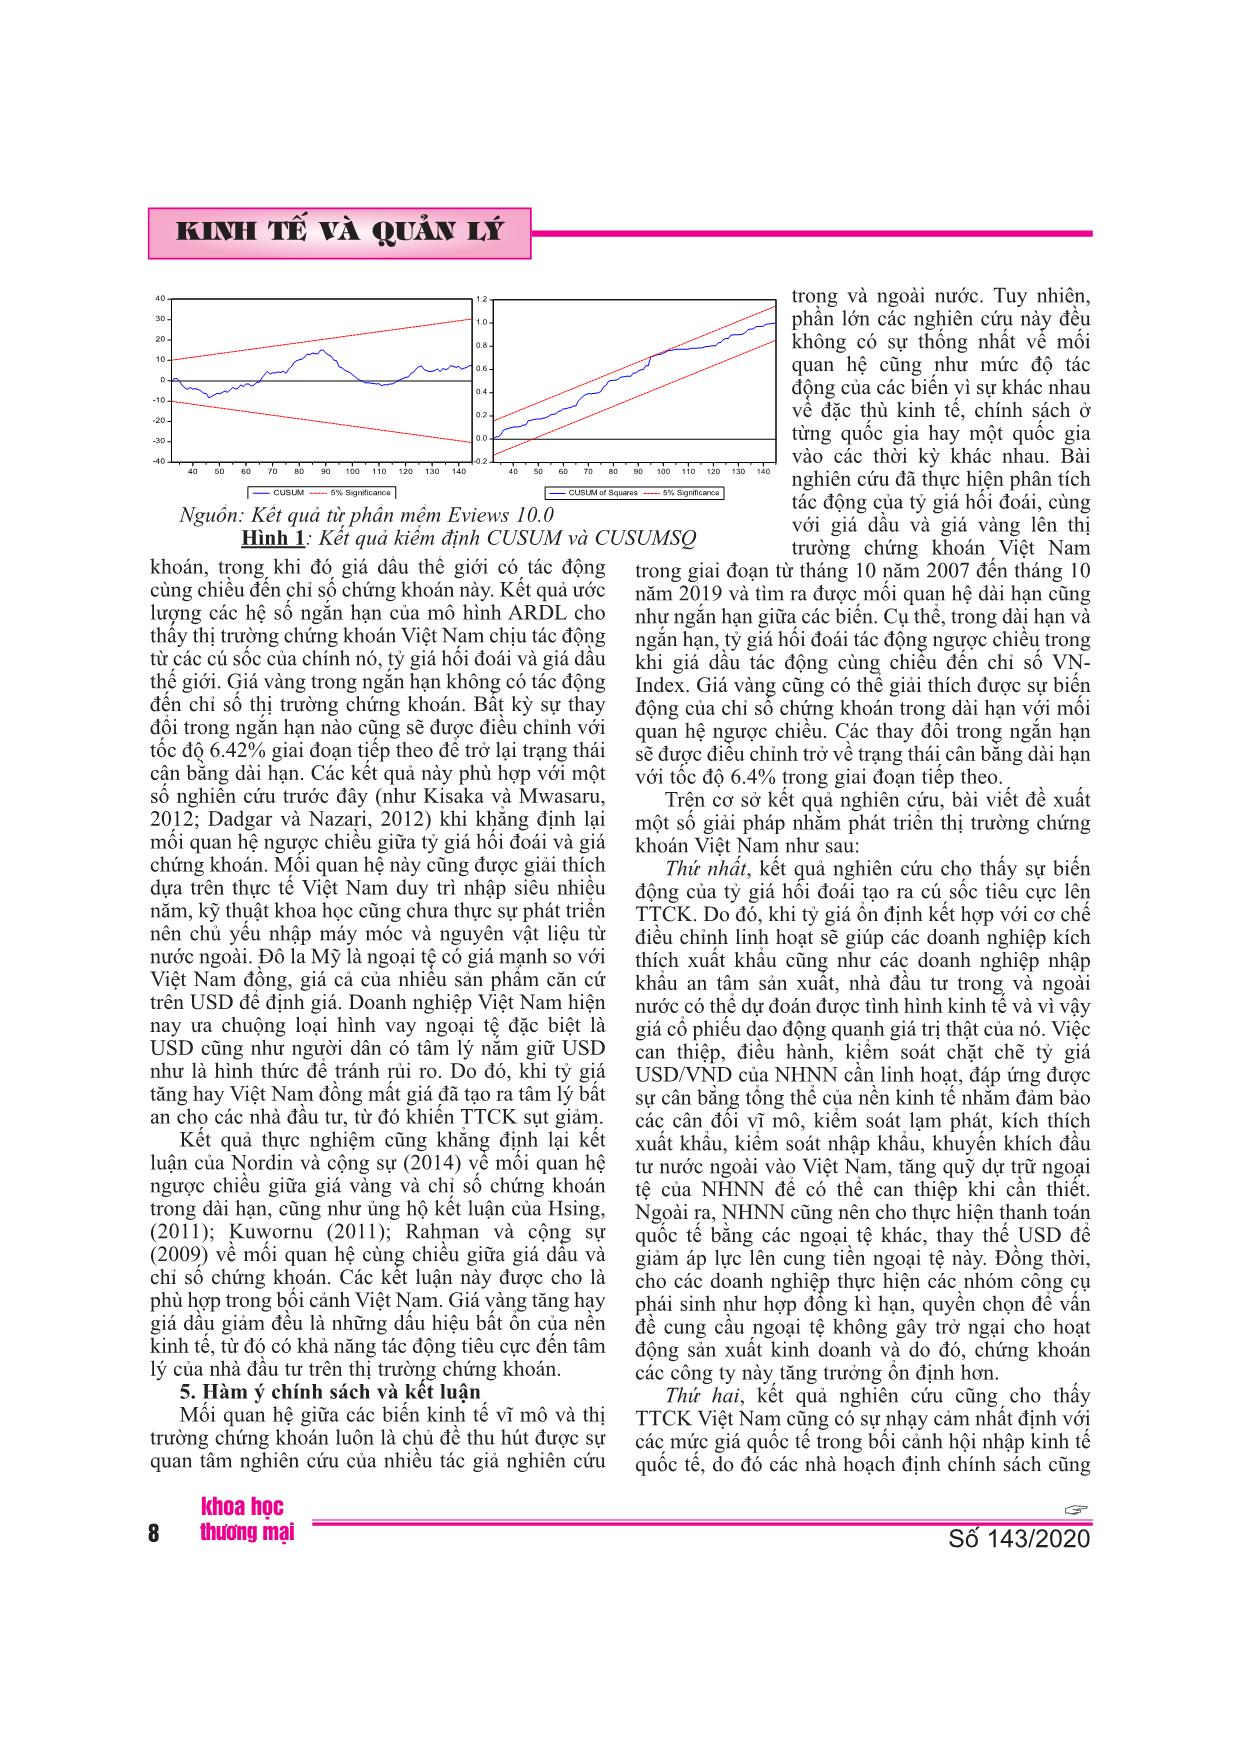 Áp dụng mô hình ardl nghiên cứu tác động của các chỉ số giá đến thị trường chứng khoán Việt Nam trang 8